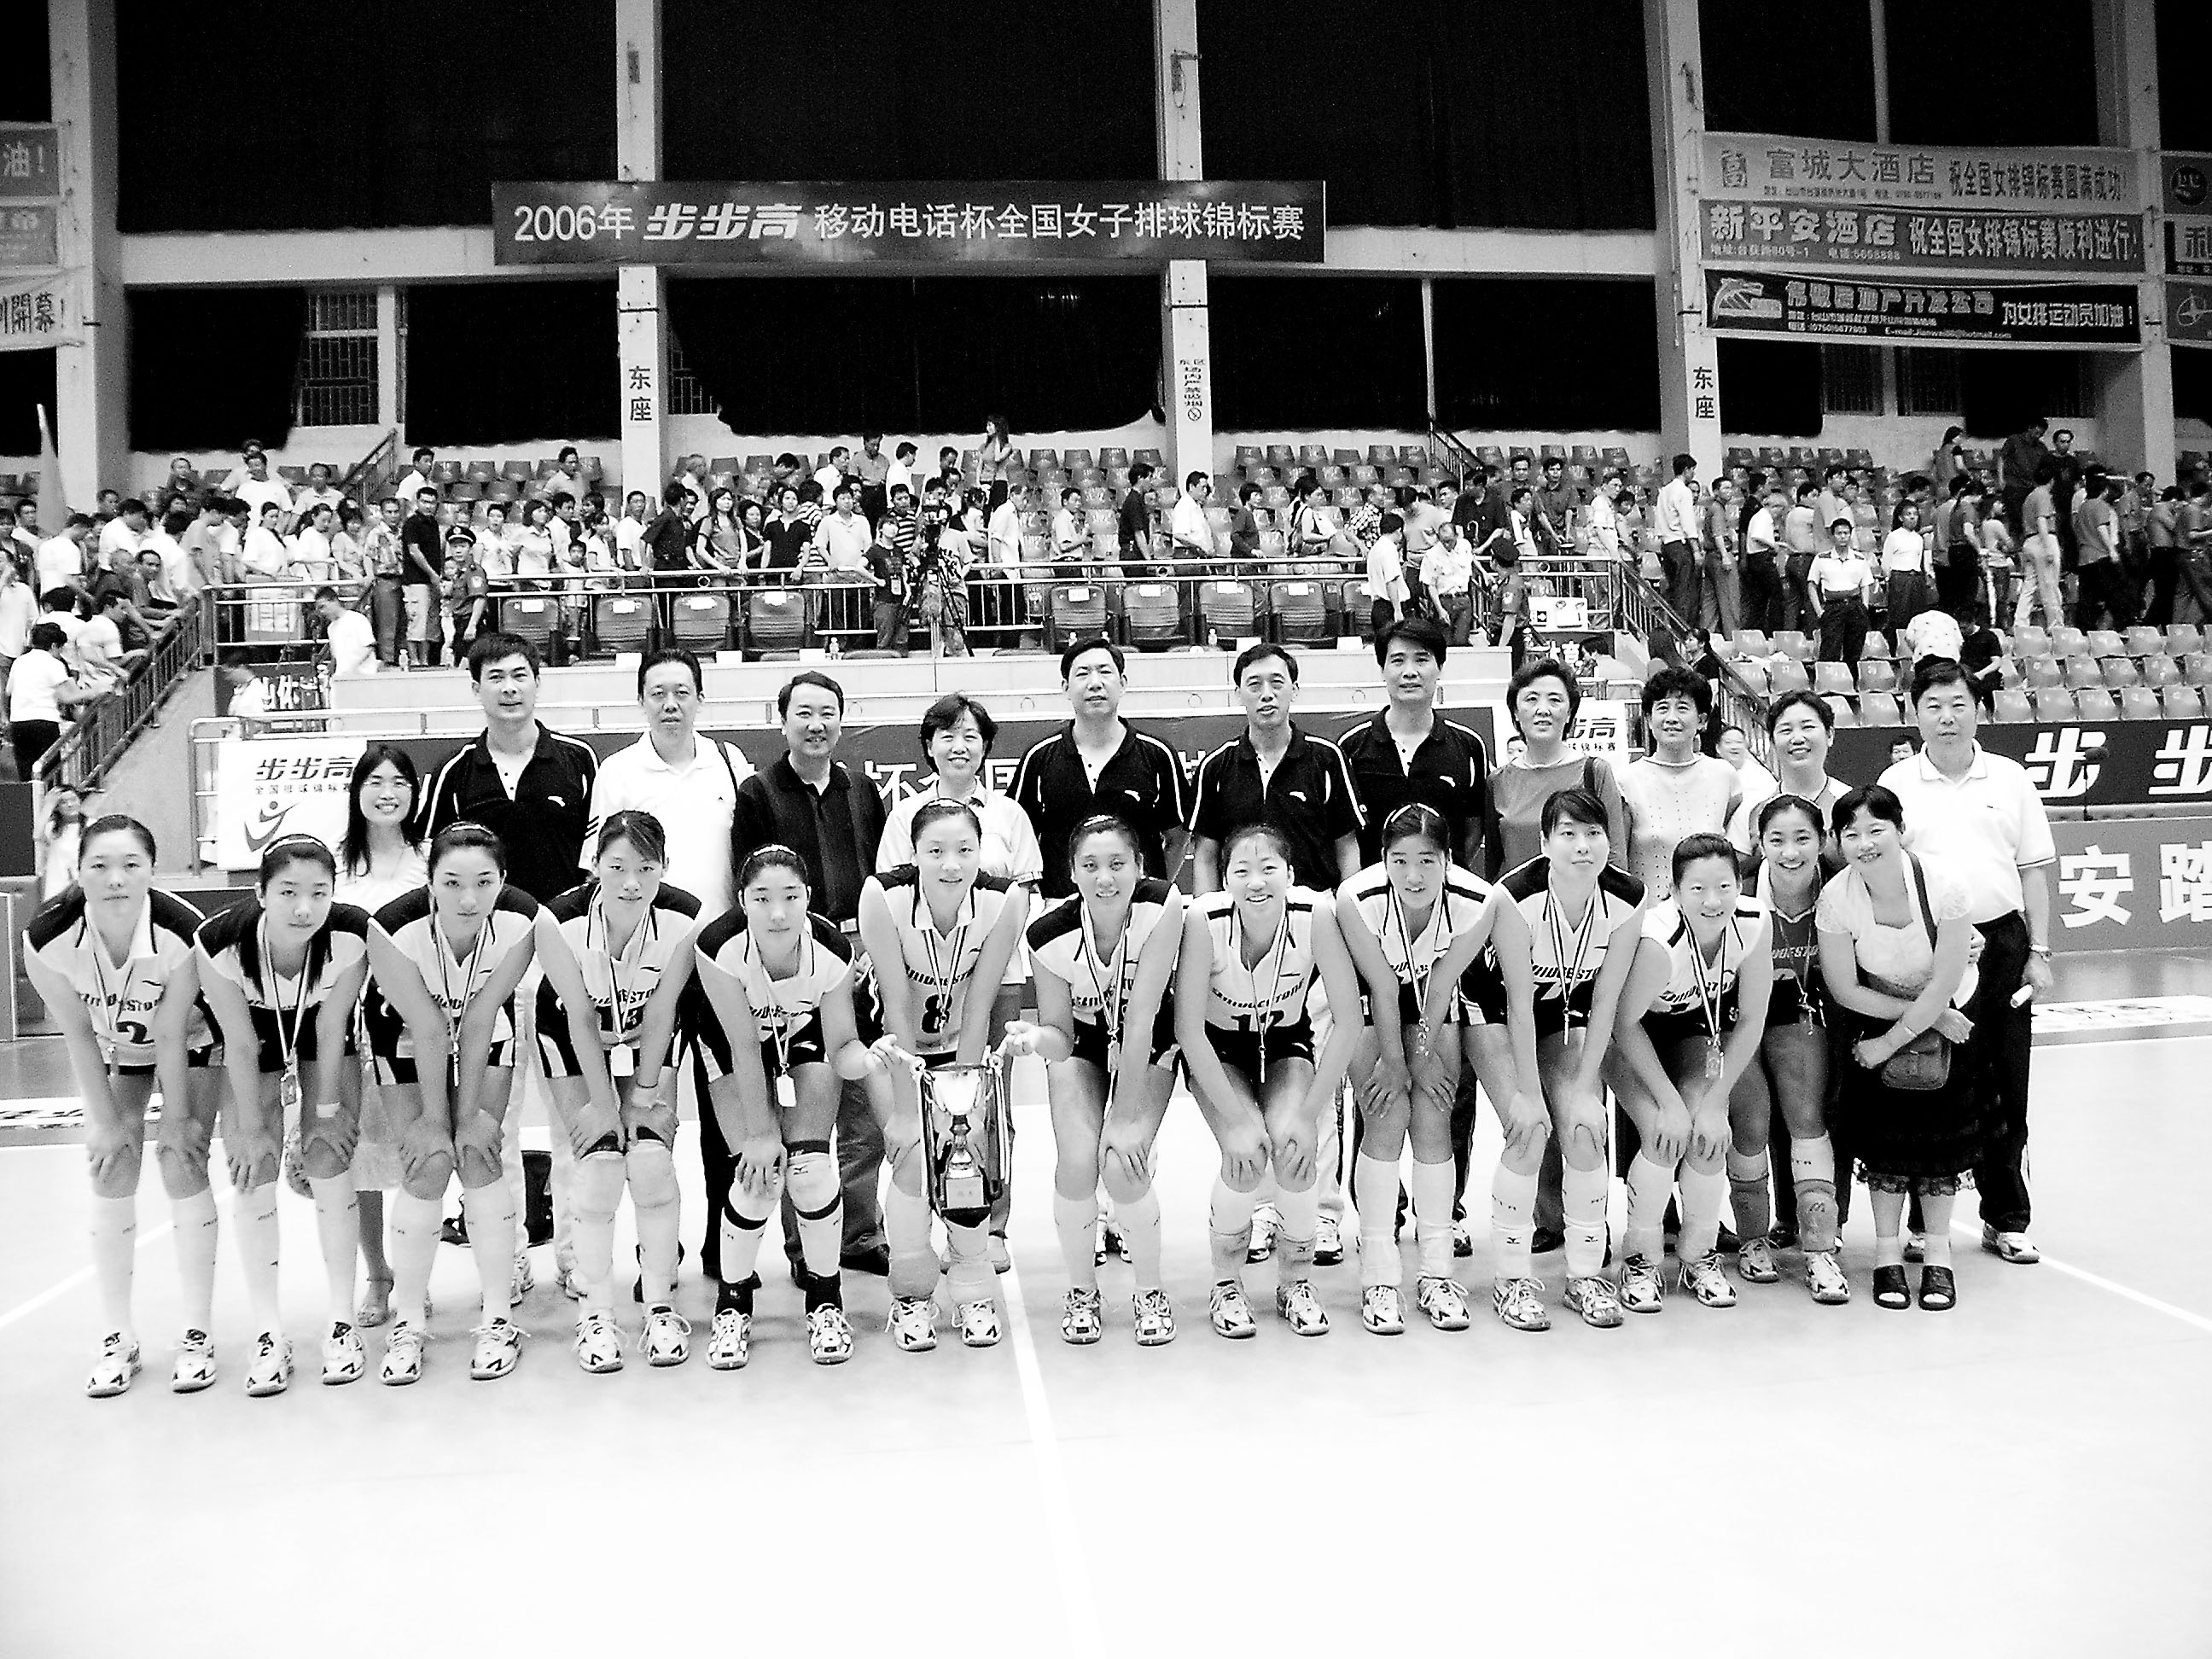 天津女排奪得冠軍獎盃後在台山體育館合影